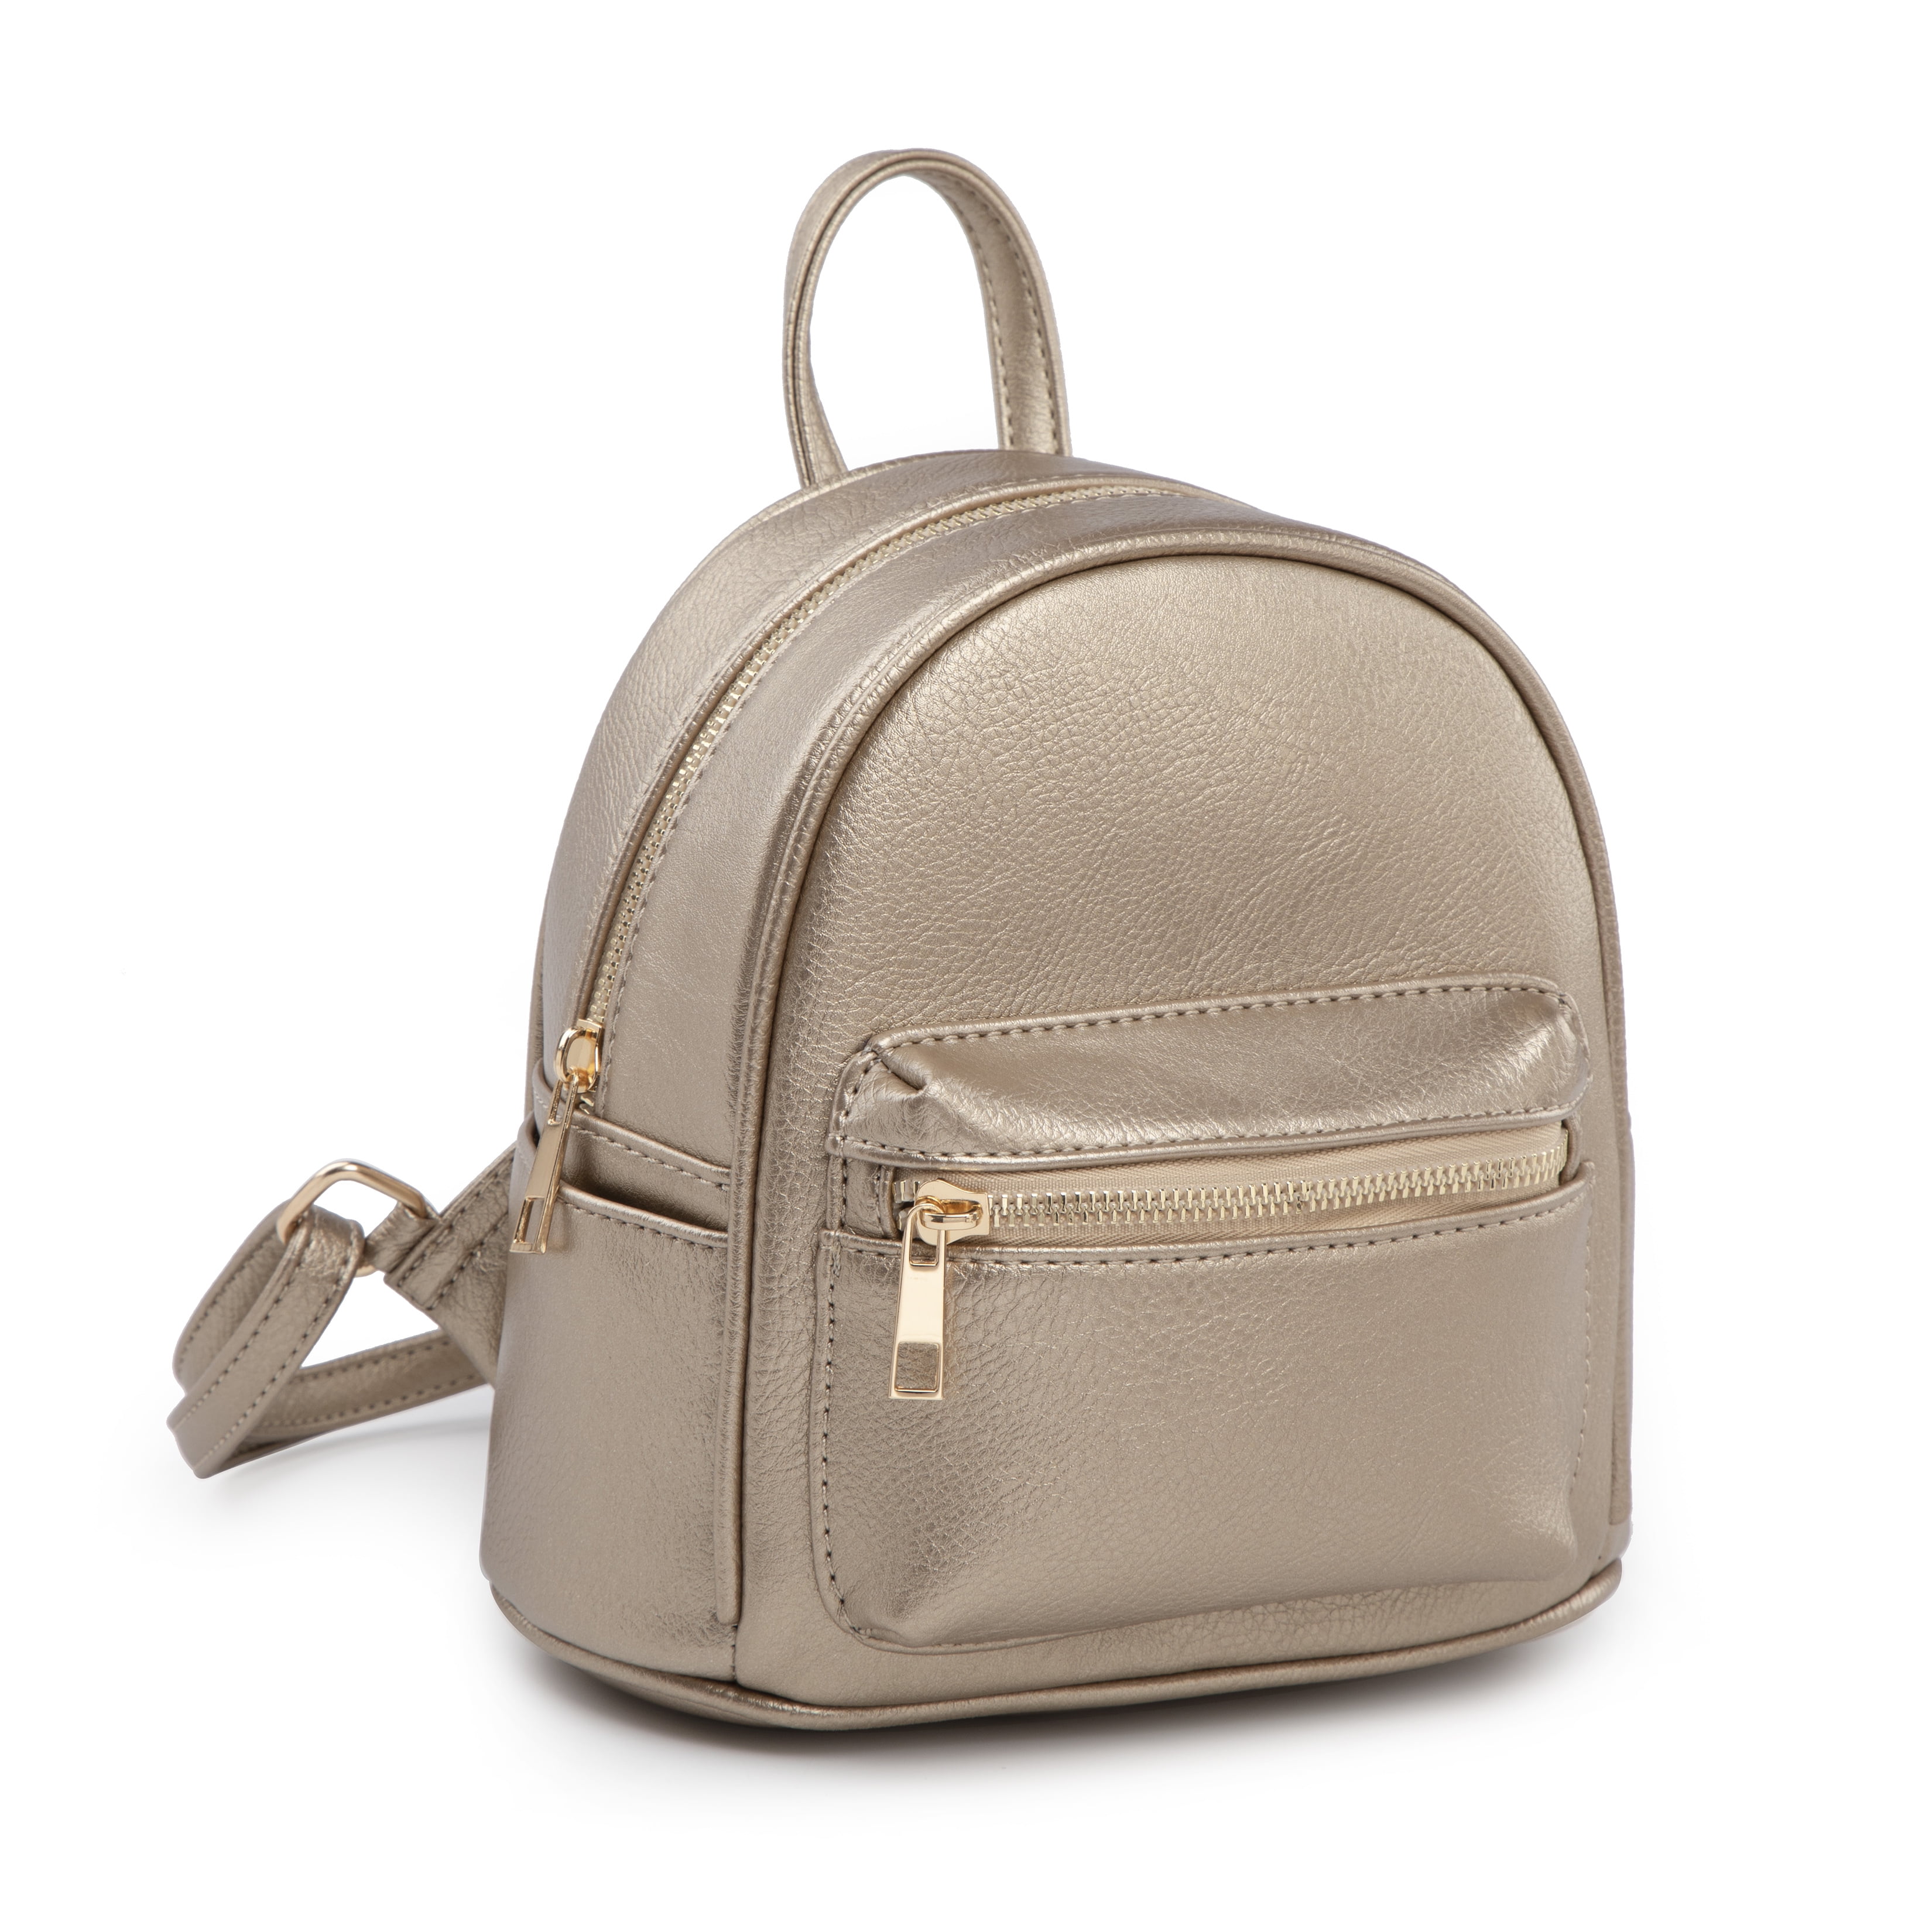 3PCS Women Girl Backpack Travel Leather Handbag Rucksack Shoulder School Bag 